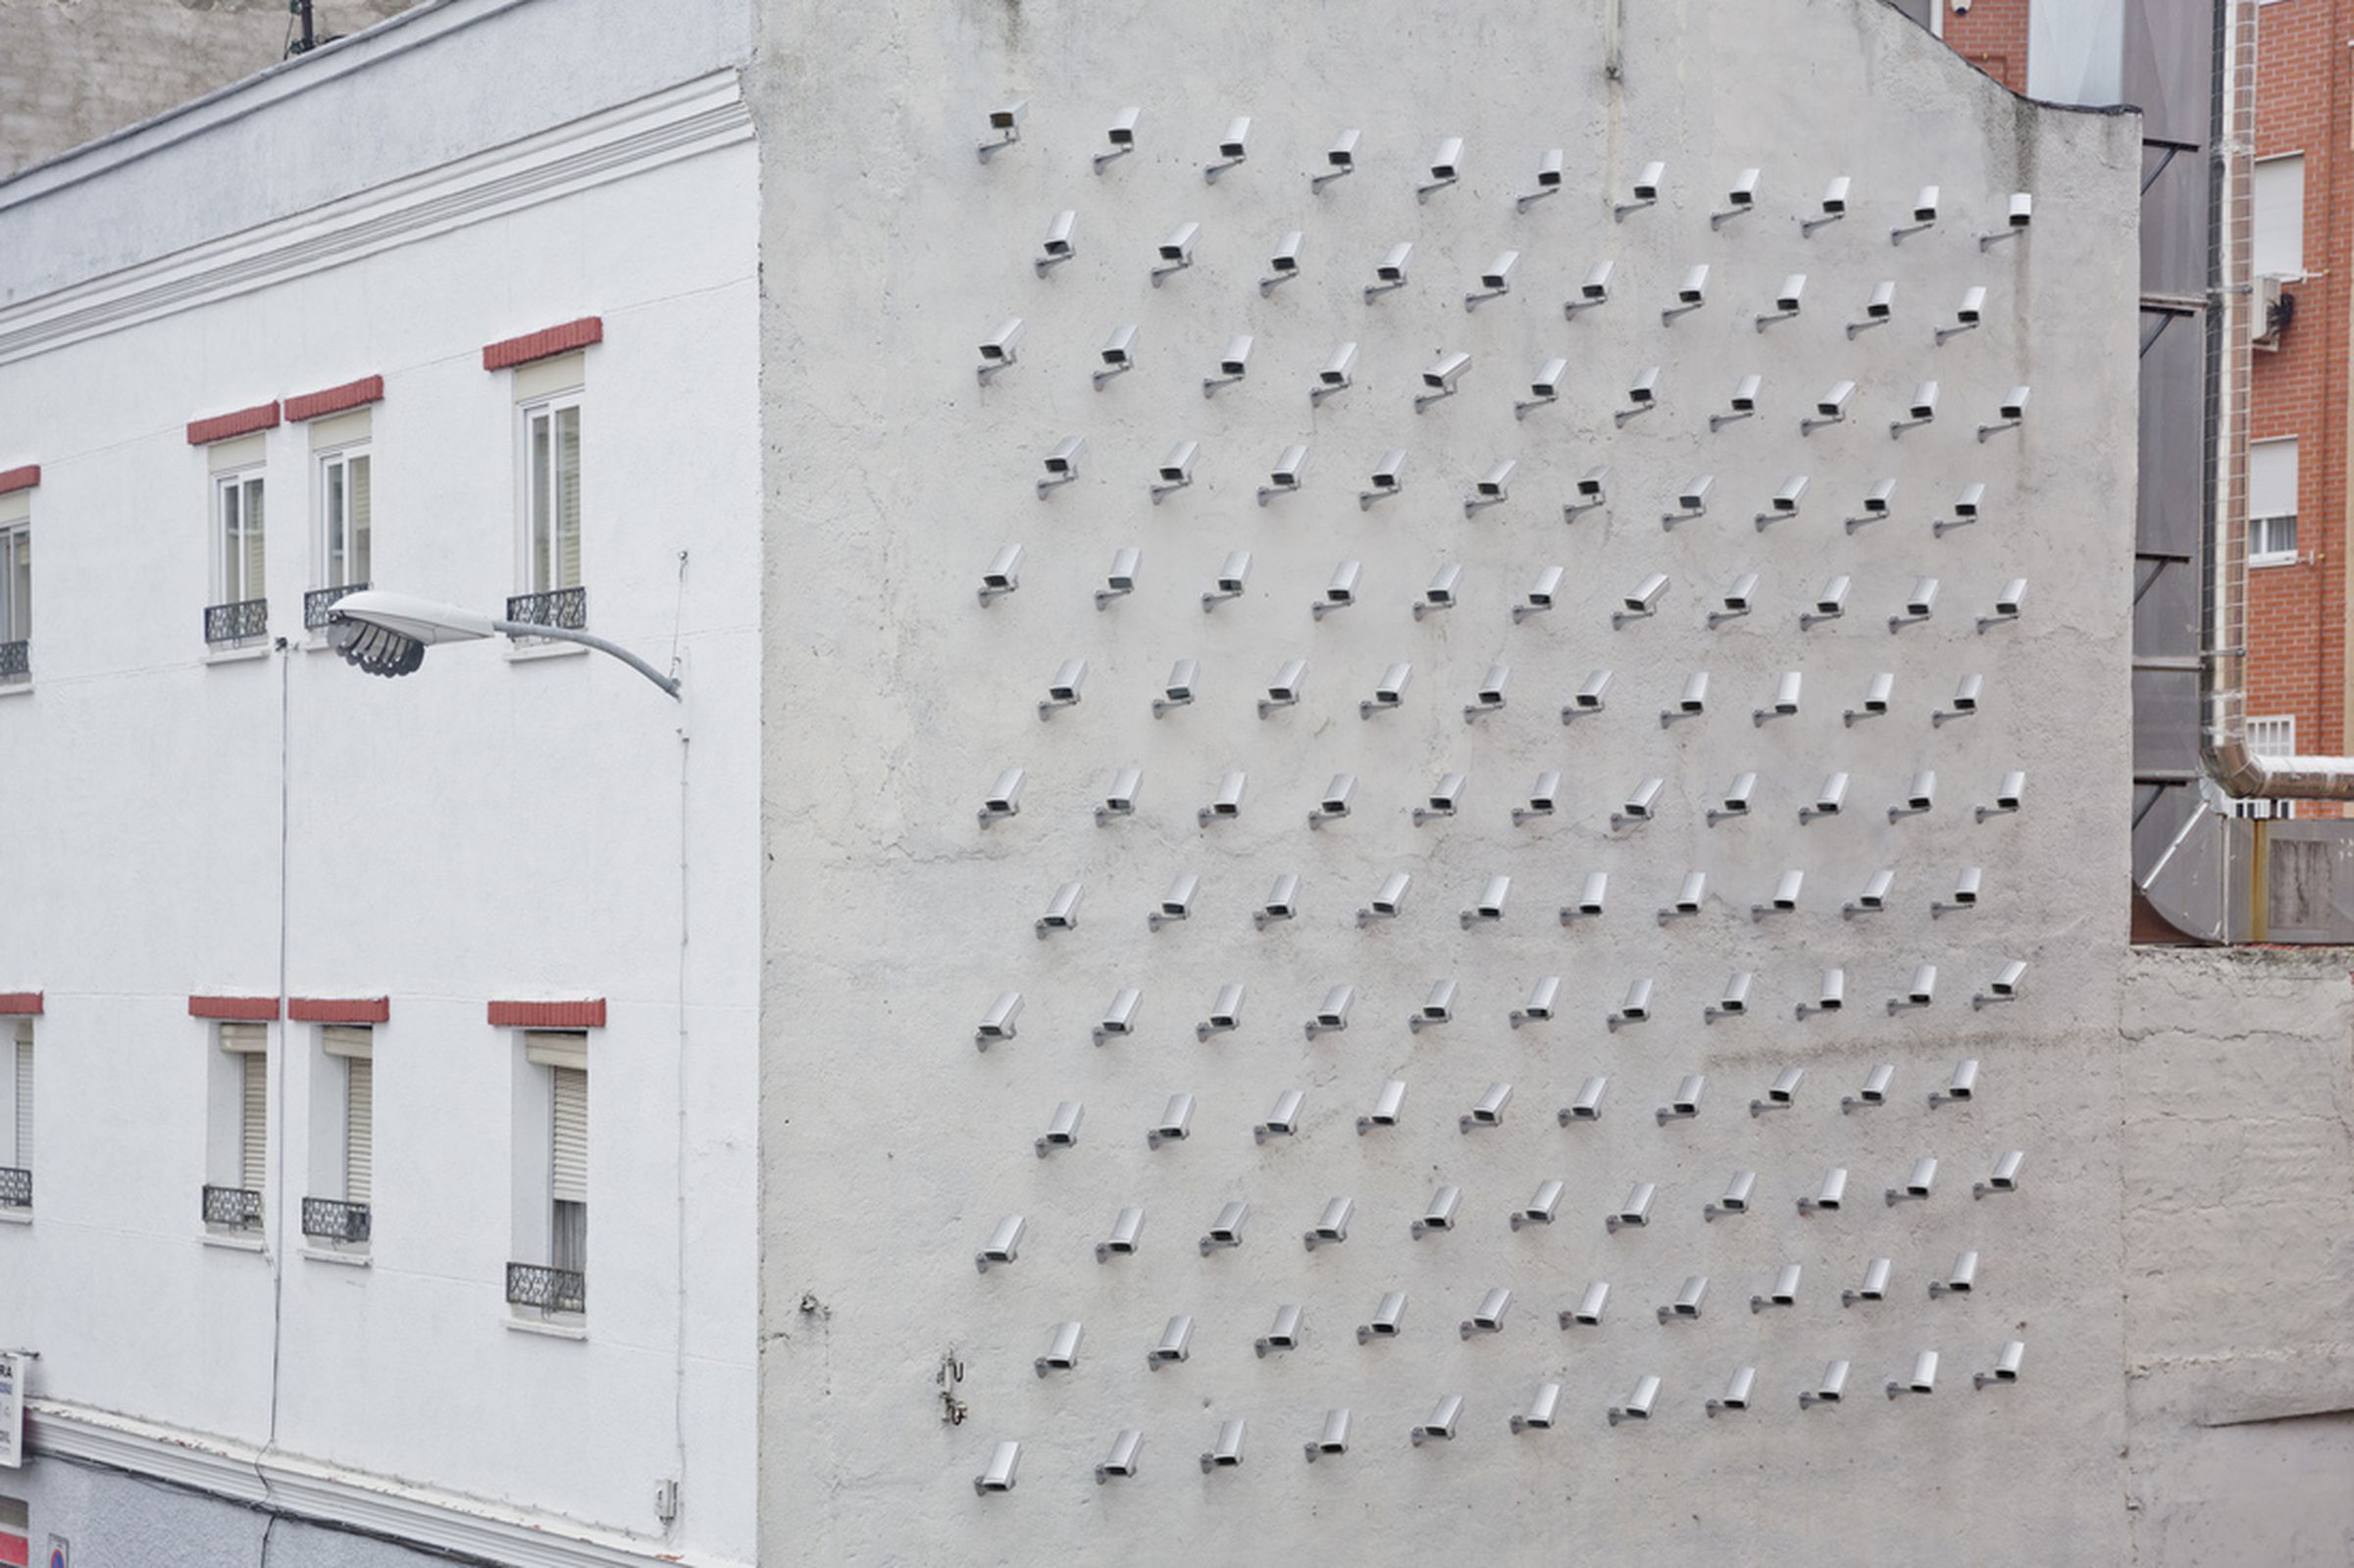 SpY Cameras installation